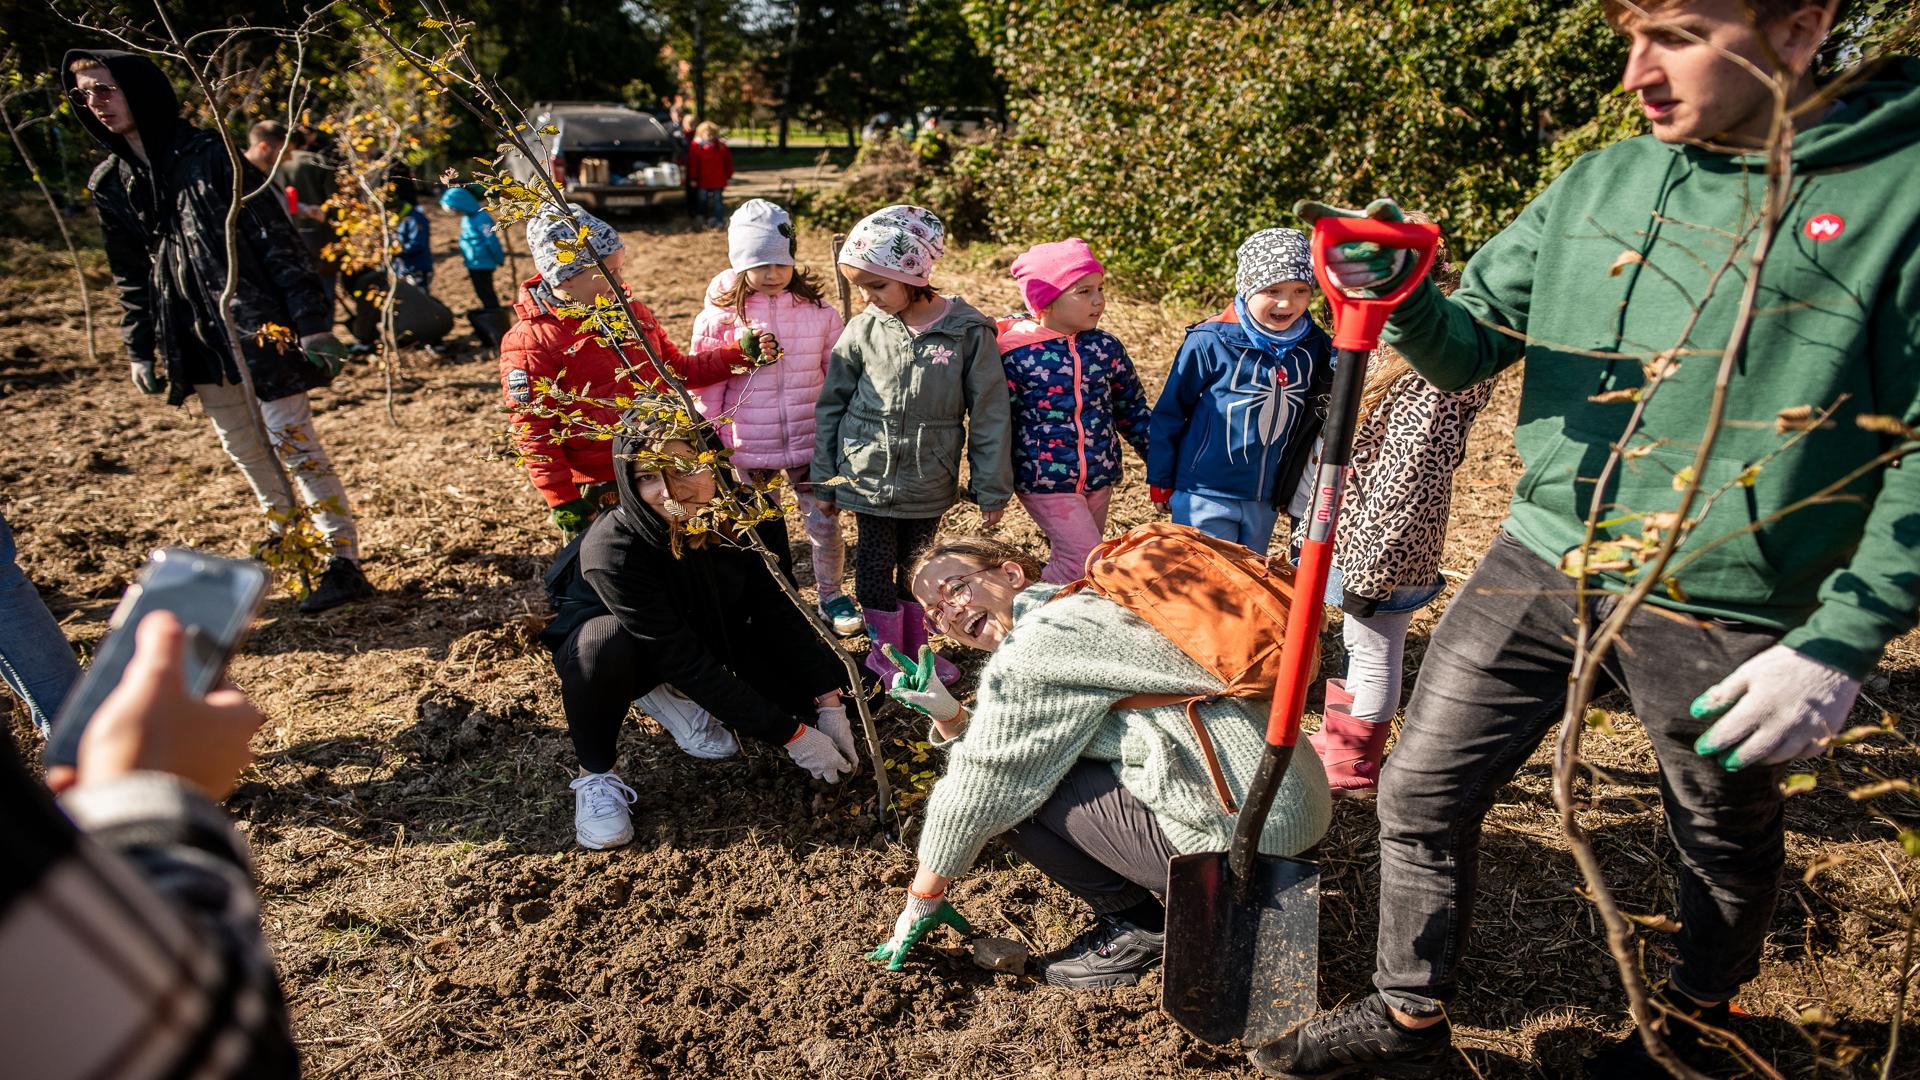 ką kolorowo ubranych dzieci przy zasadzonym przez nich drzewku. W tle studenci podczas sadzenia innych sadzonek.